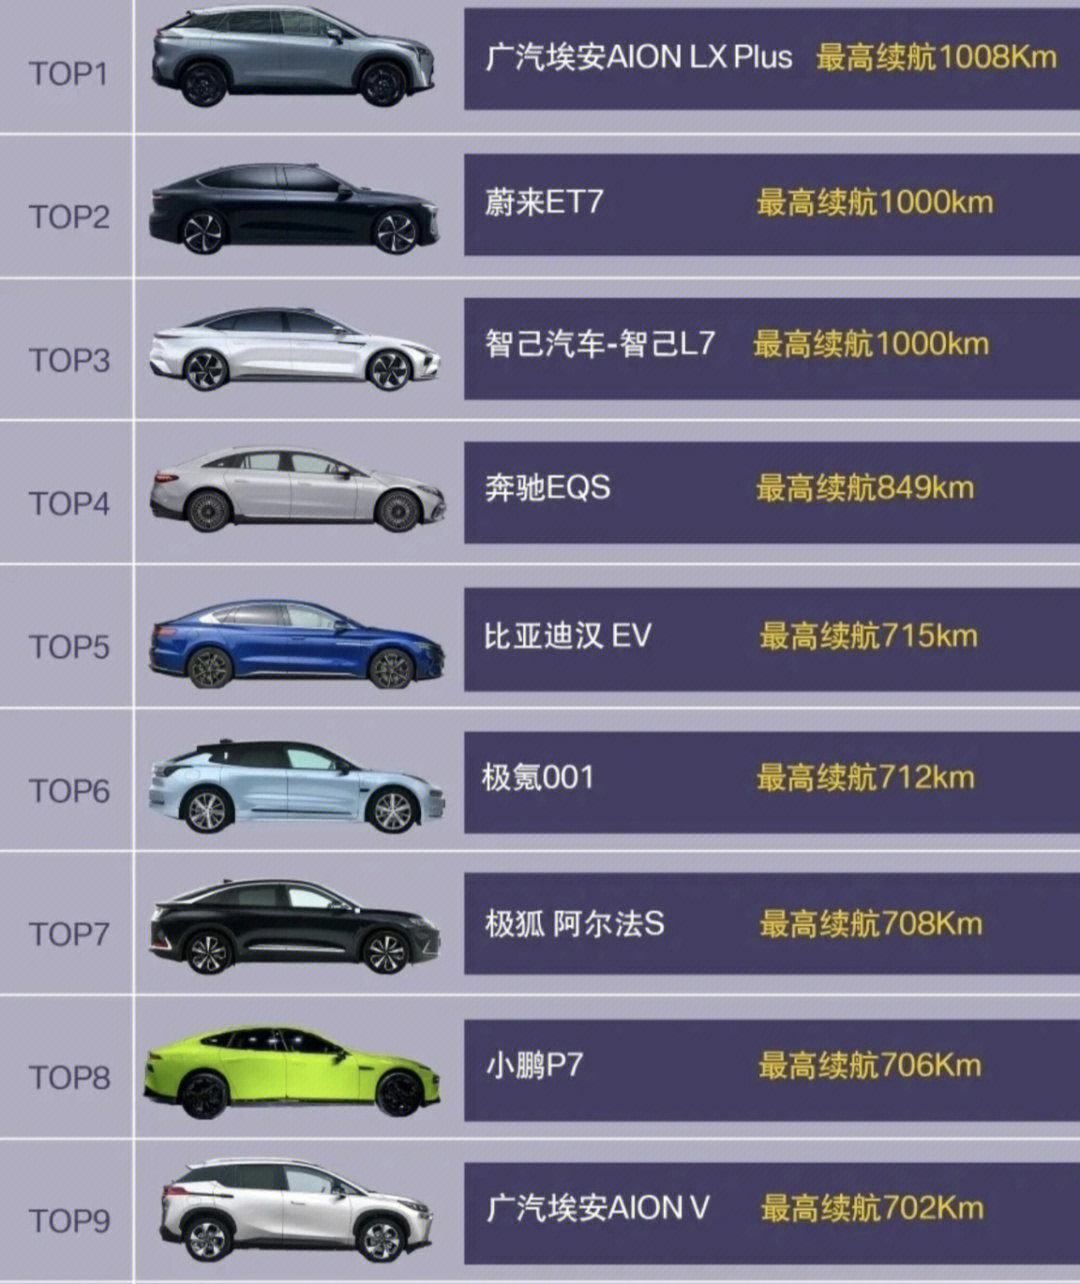 续航里程最长的纯电动车型top10排名如下